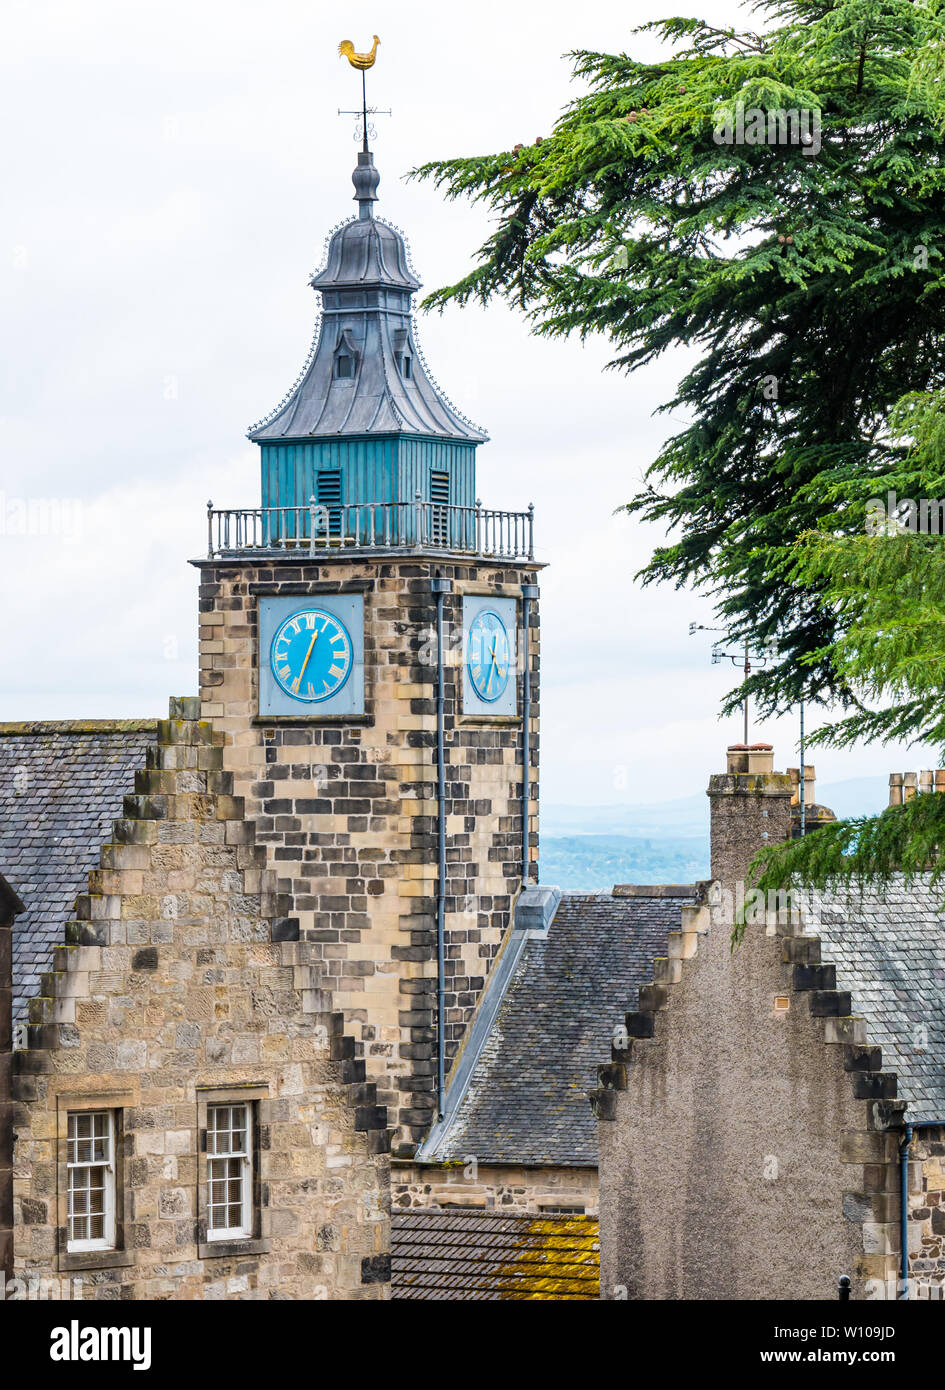 Tall vecchia storica torre dell'orologio di Tolbooth, Stirling Old Town, Scotland, Regno Unito Foto Stock